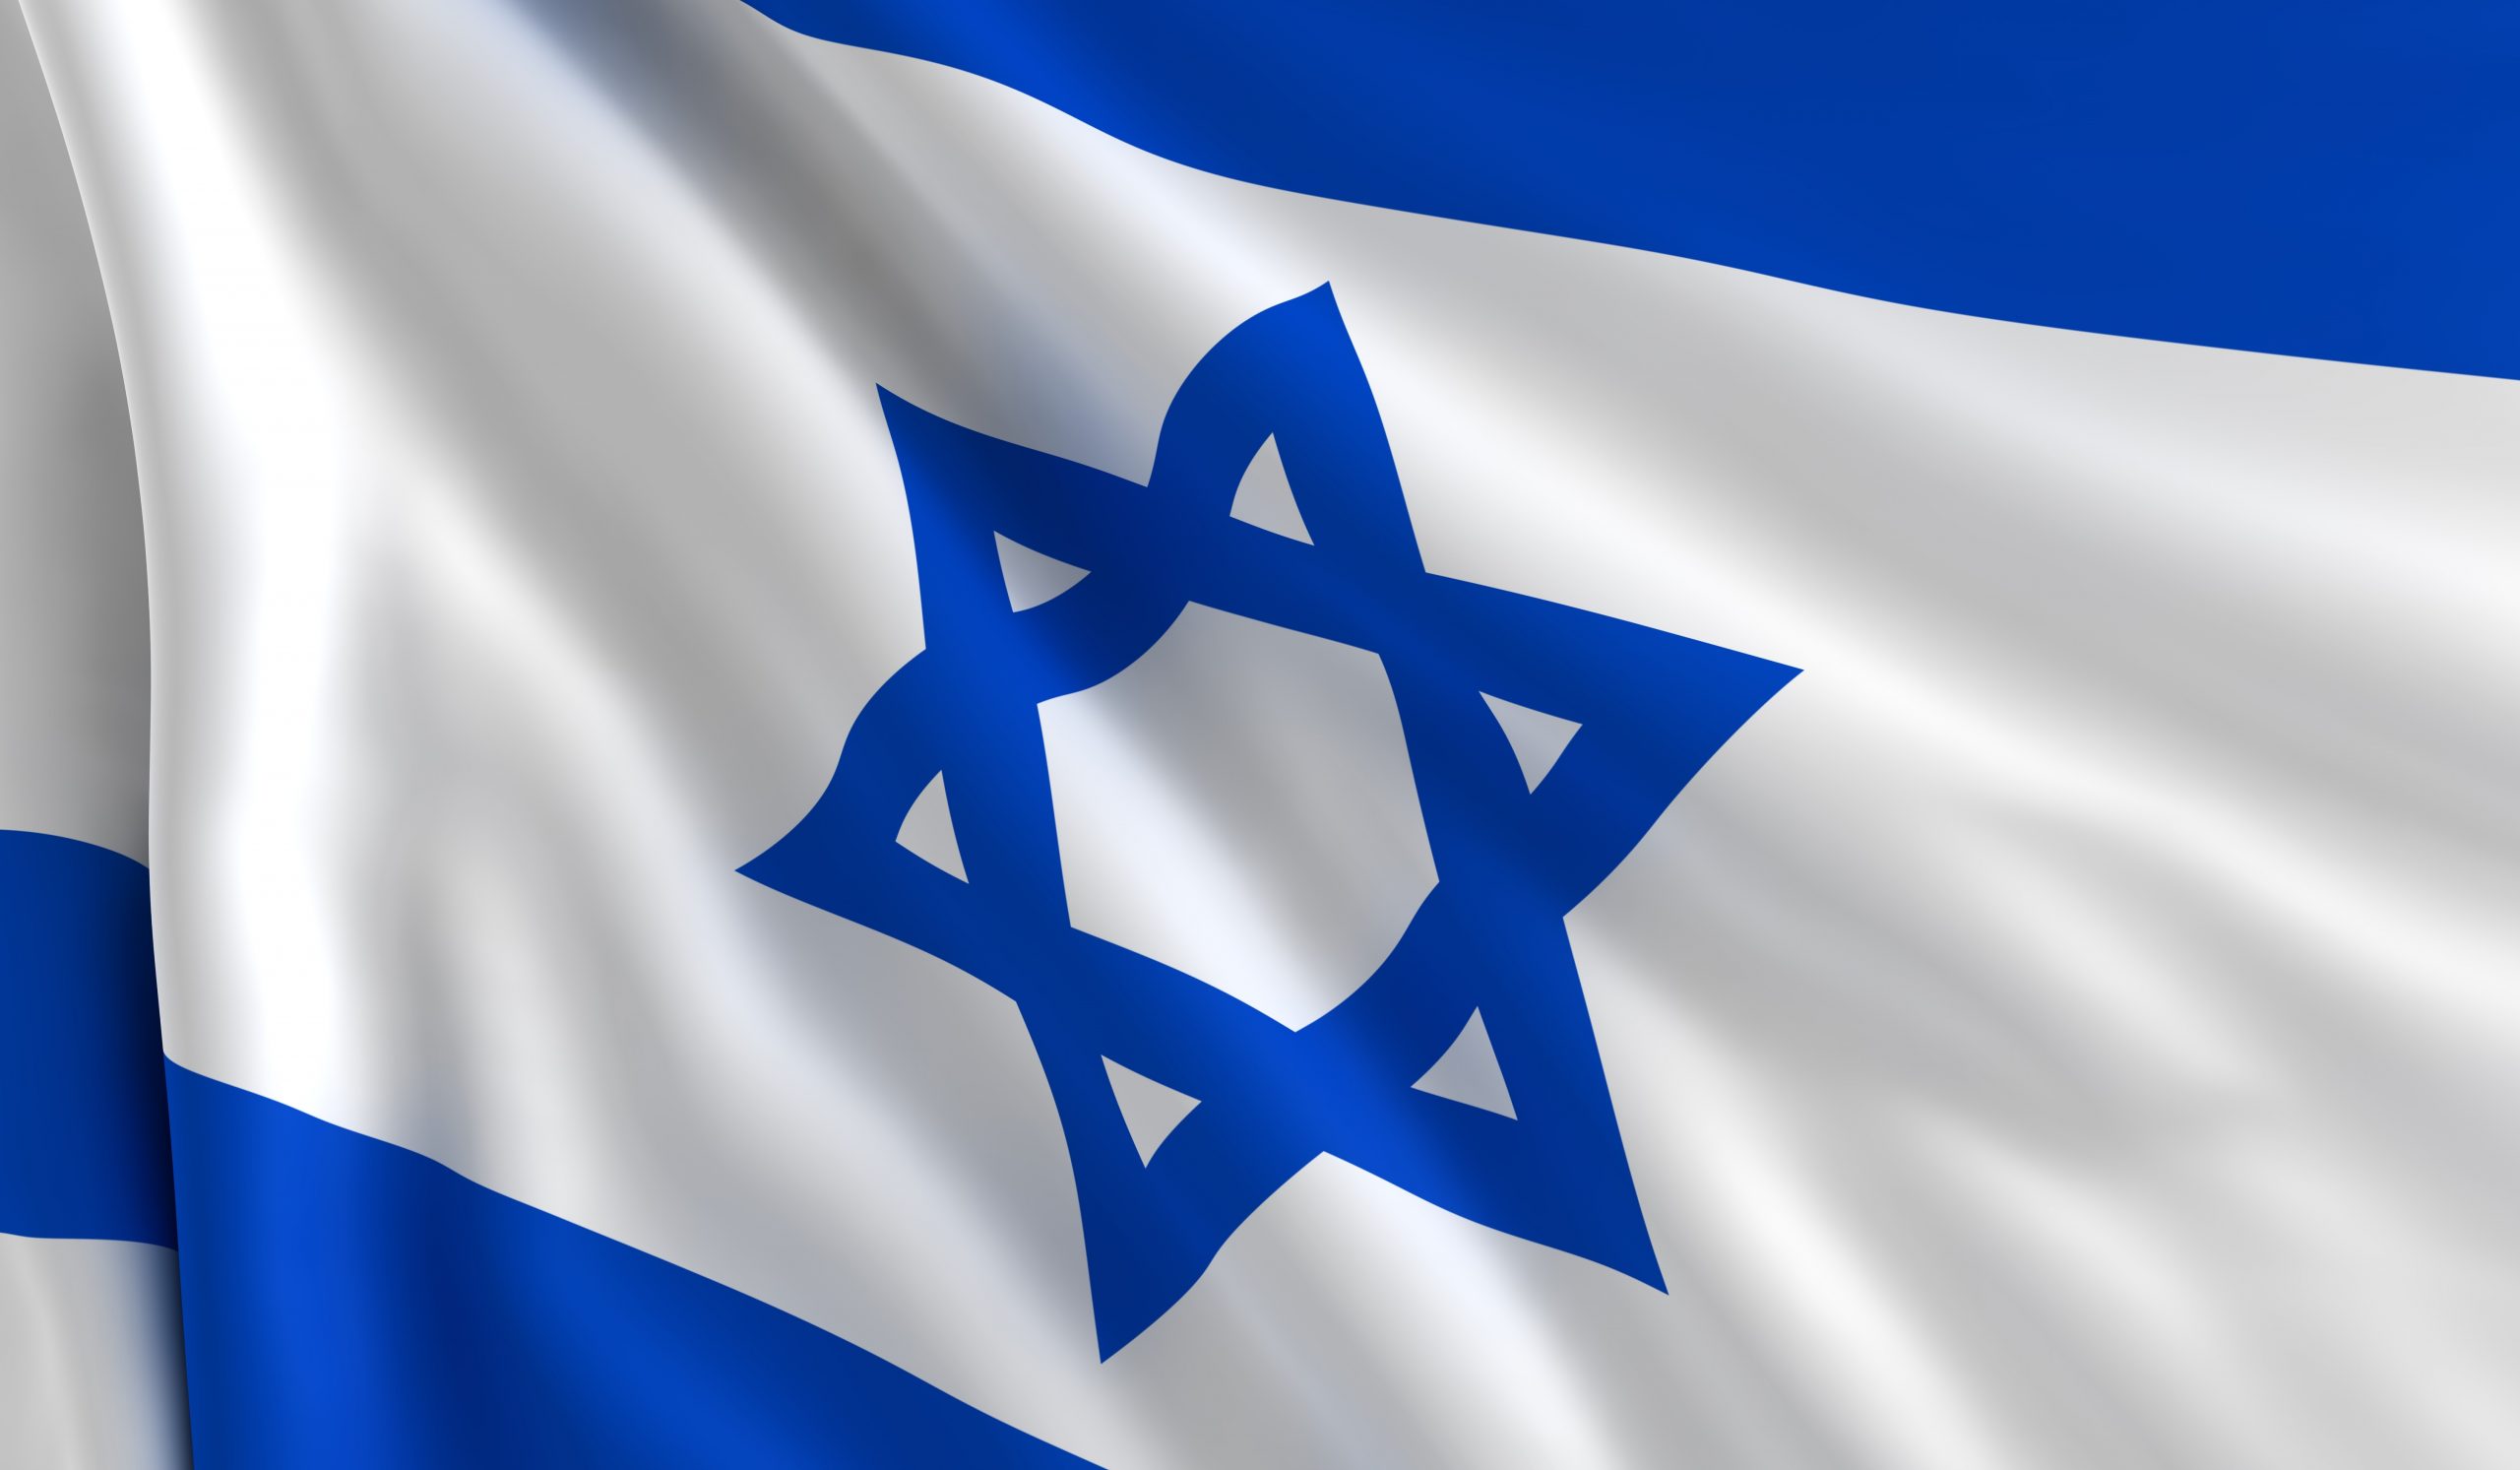 Juul banned in Israel